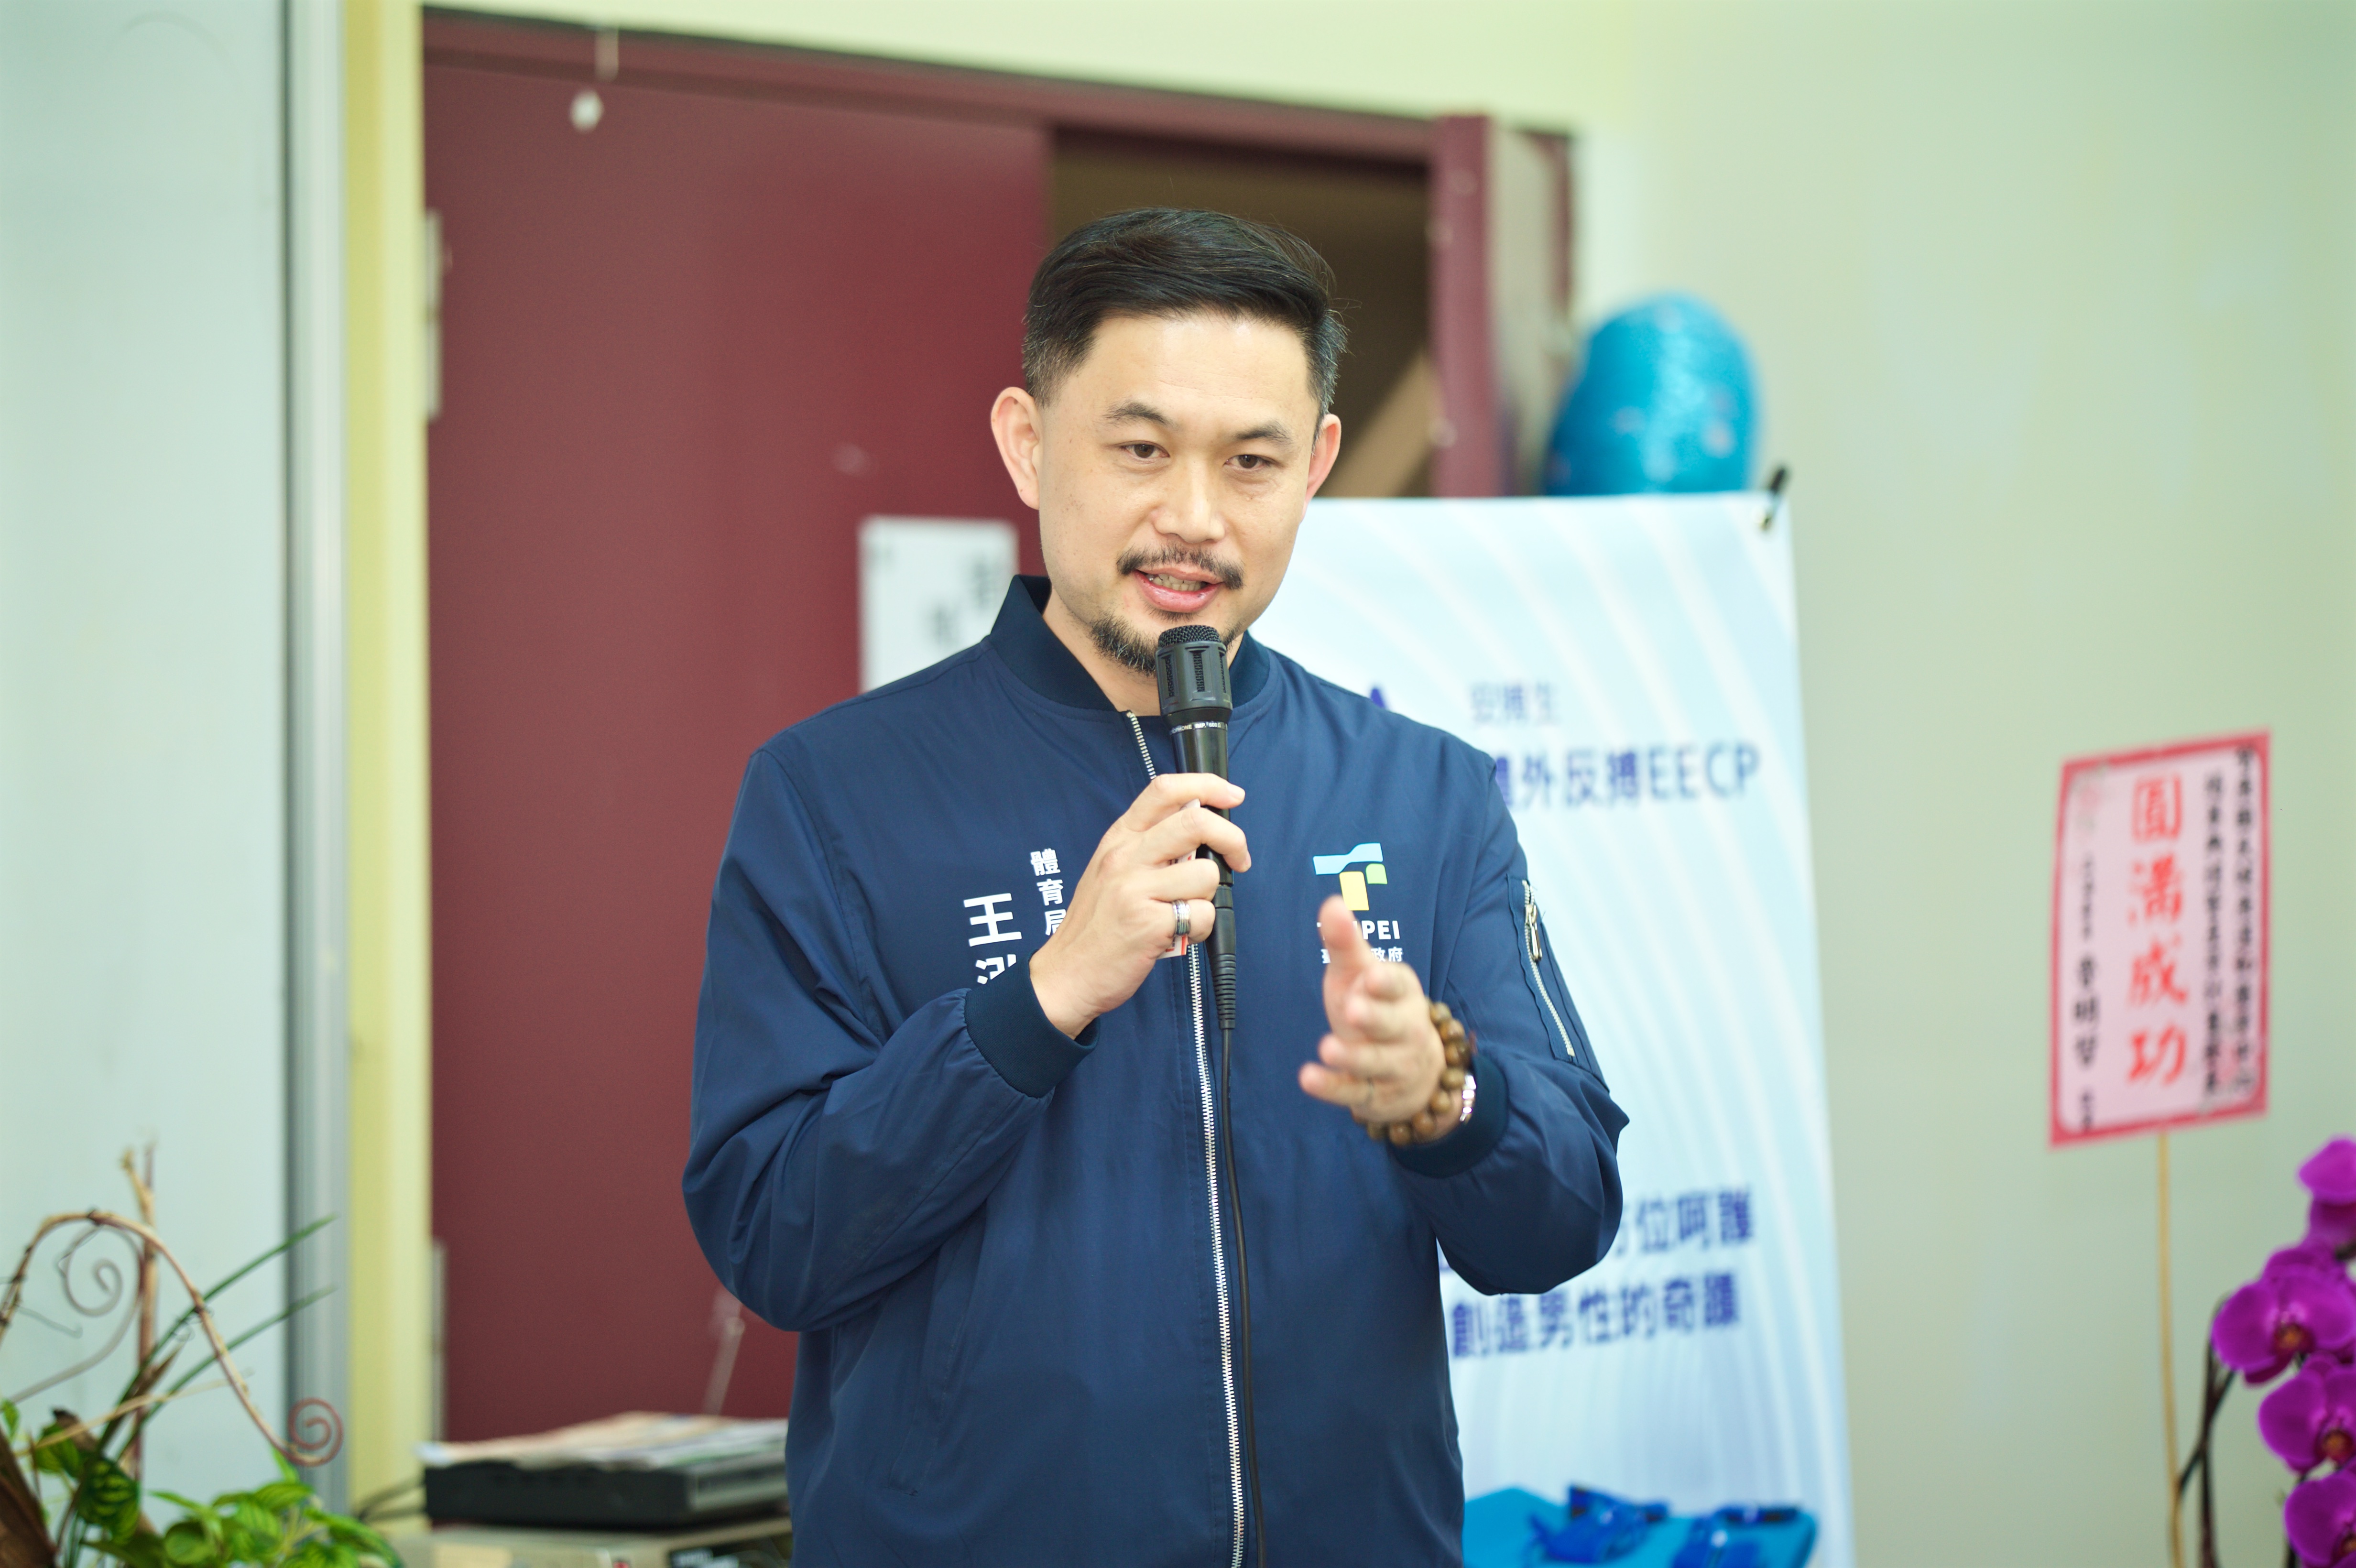 台北市體育局長王泓翔表示，使用智康AIOT訊聯網系統搭配客製化運動項目，也是蔣萬安市長希望將台北打造成安全、運動與未來之都的目標。圖/陳思豪攝